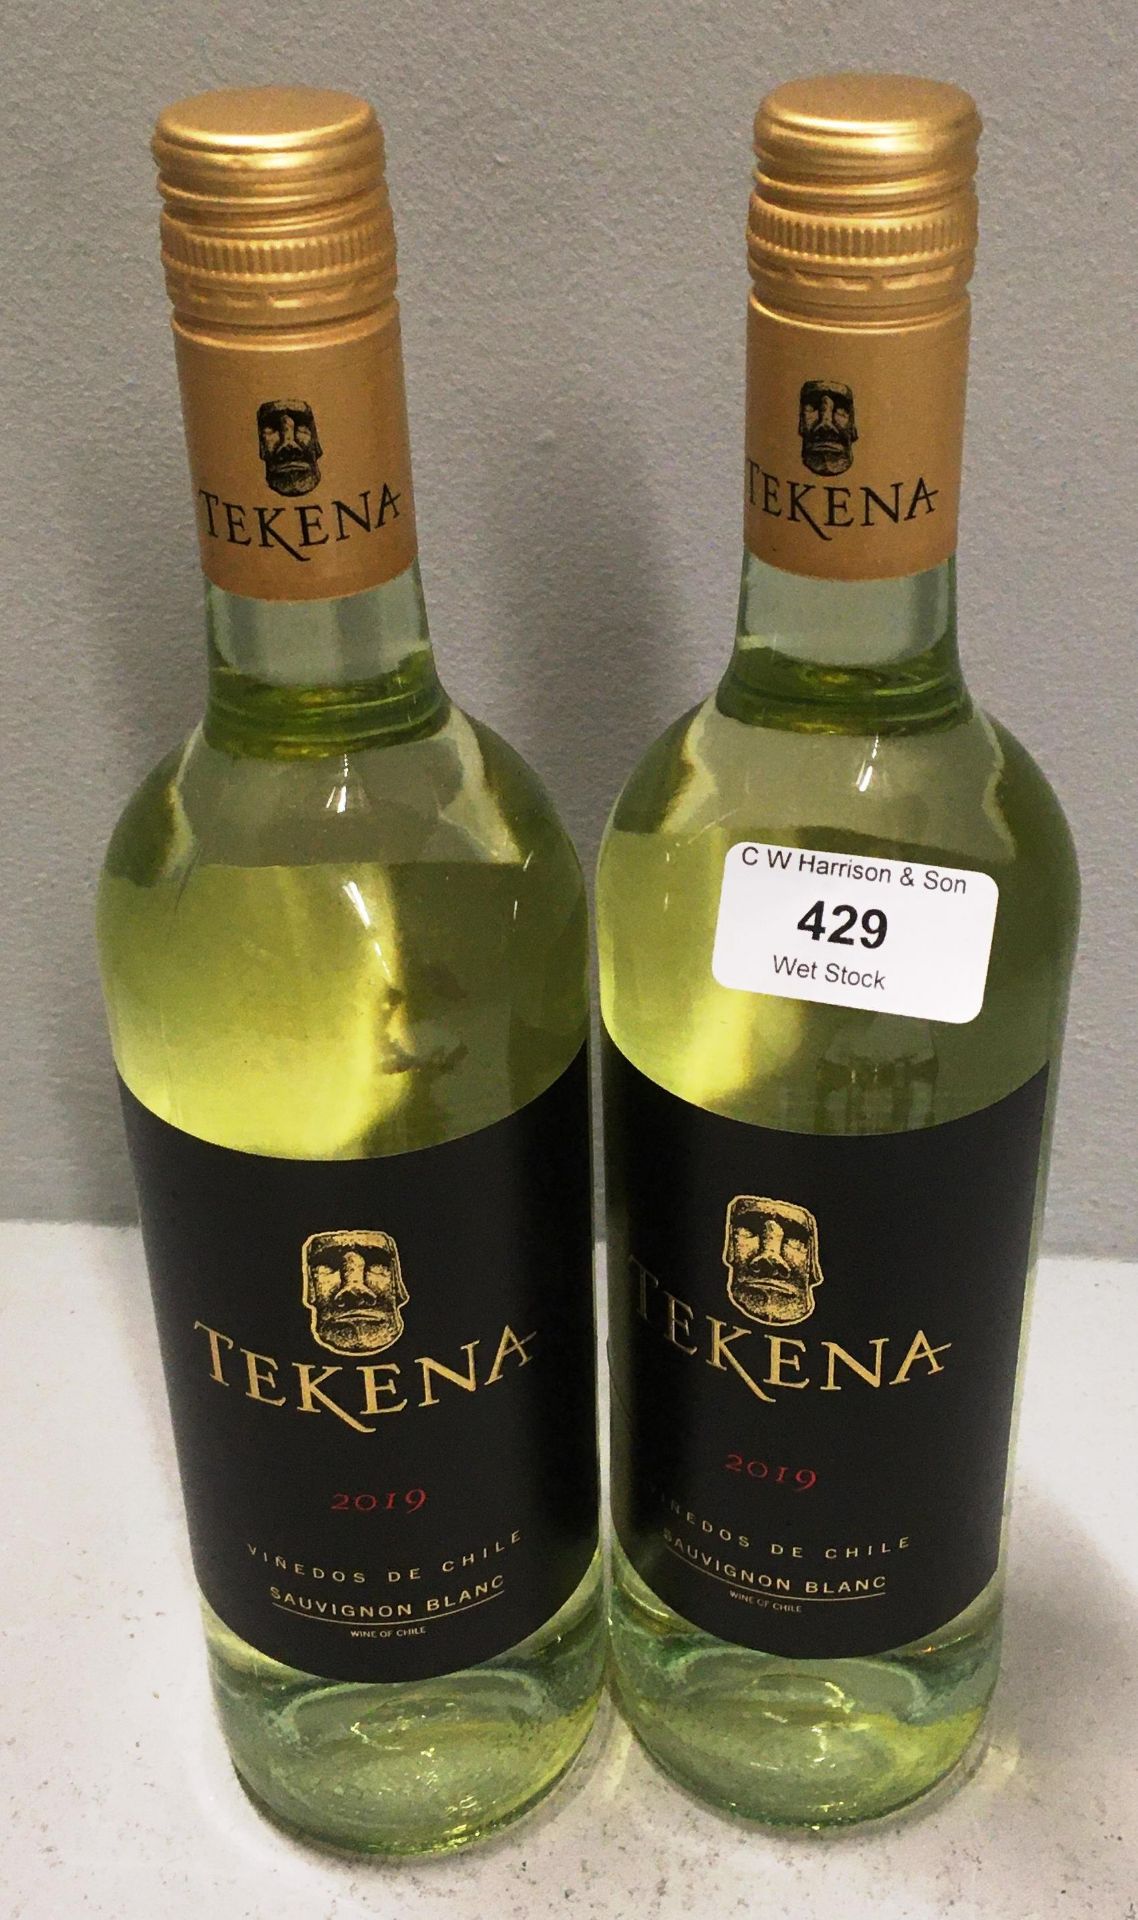 6 x 750ml bottles of Tekena 2019 Chilean Sauvignon Blanc